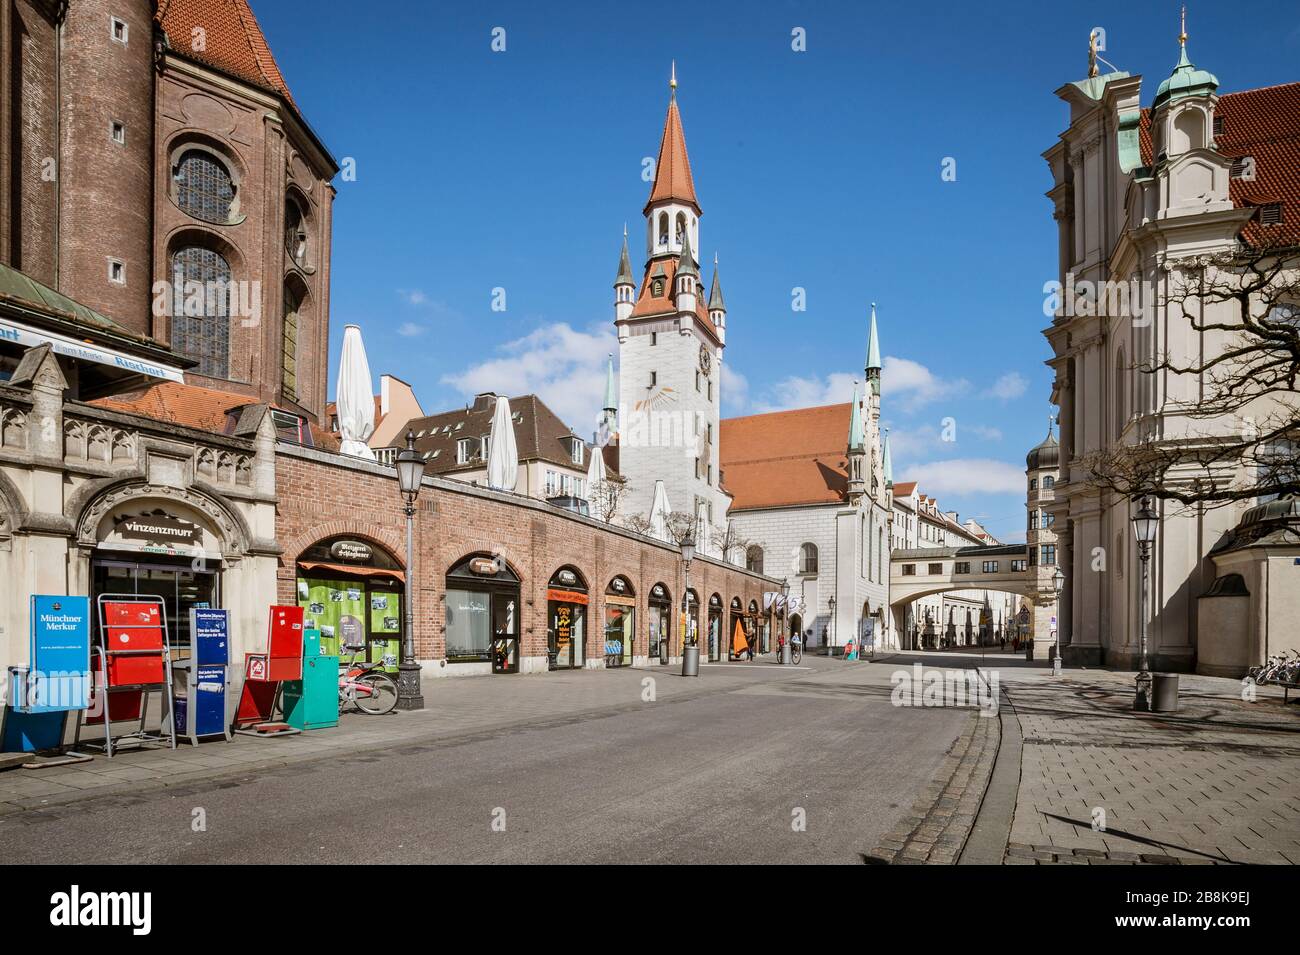 Bavière-Munich-Allemagne, 22. März 2020: Des rues vides au Viktualienmarkt de Munich en raison de l'arrêt dû au virus corona Banque D'Images